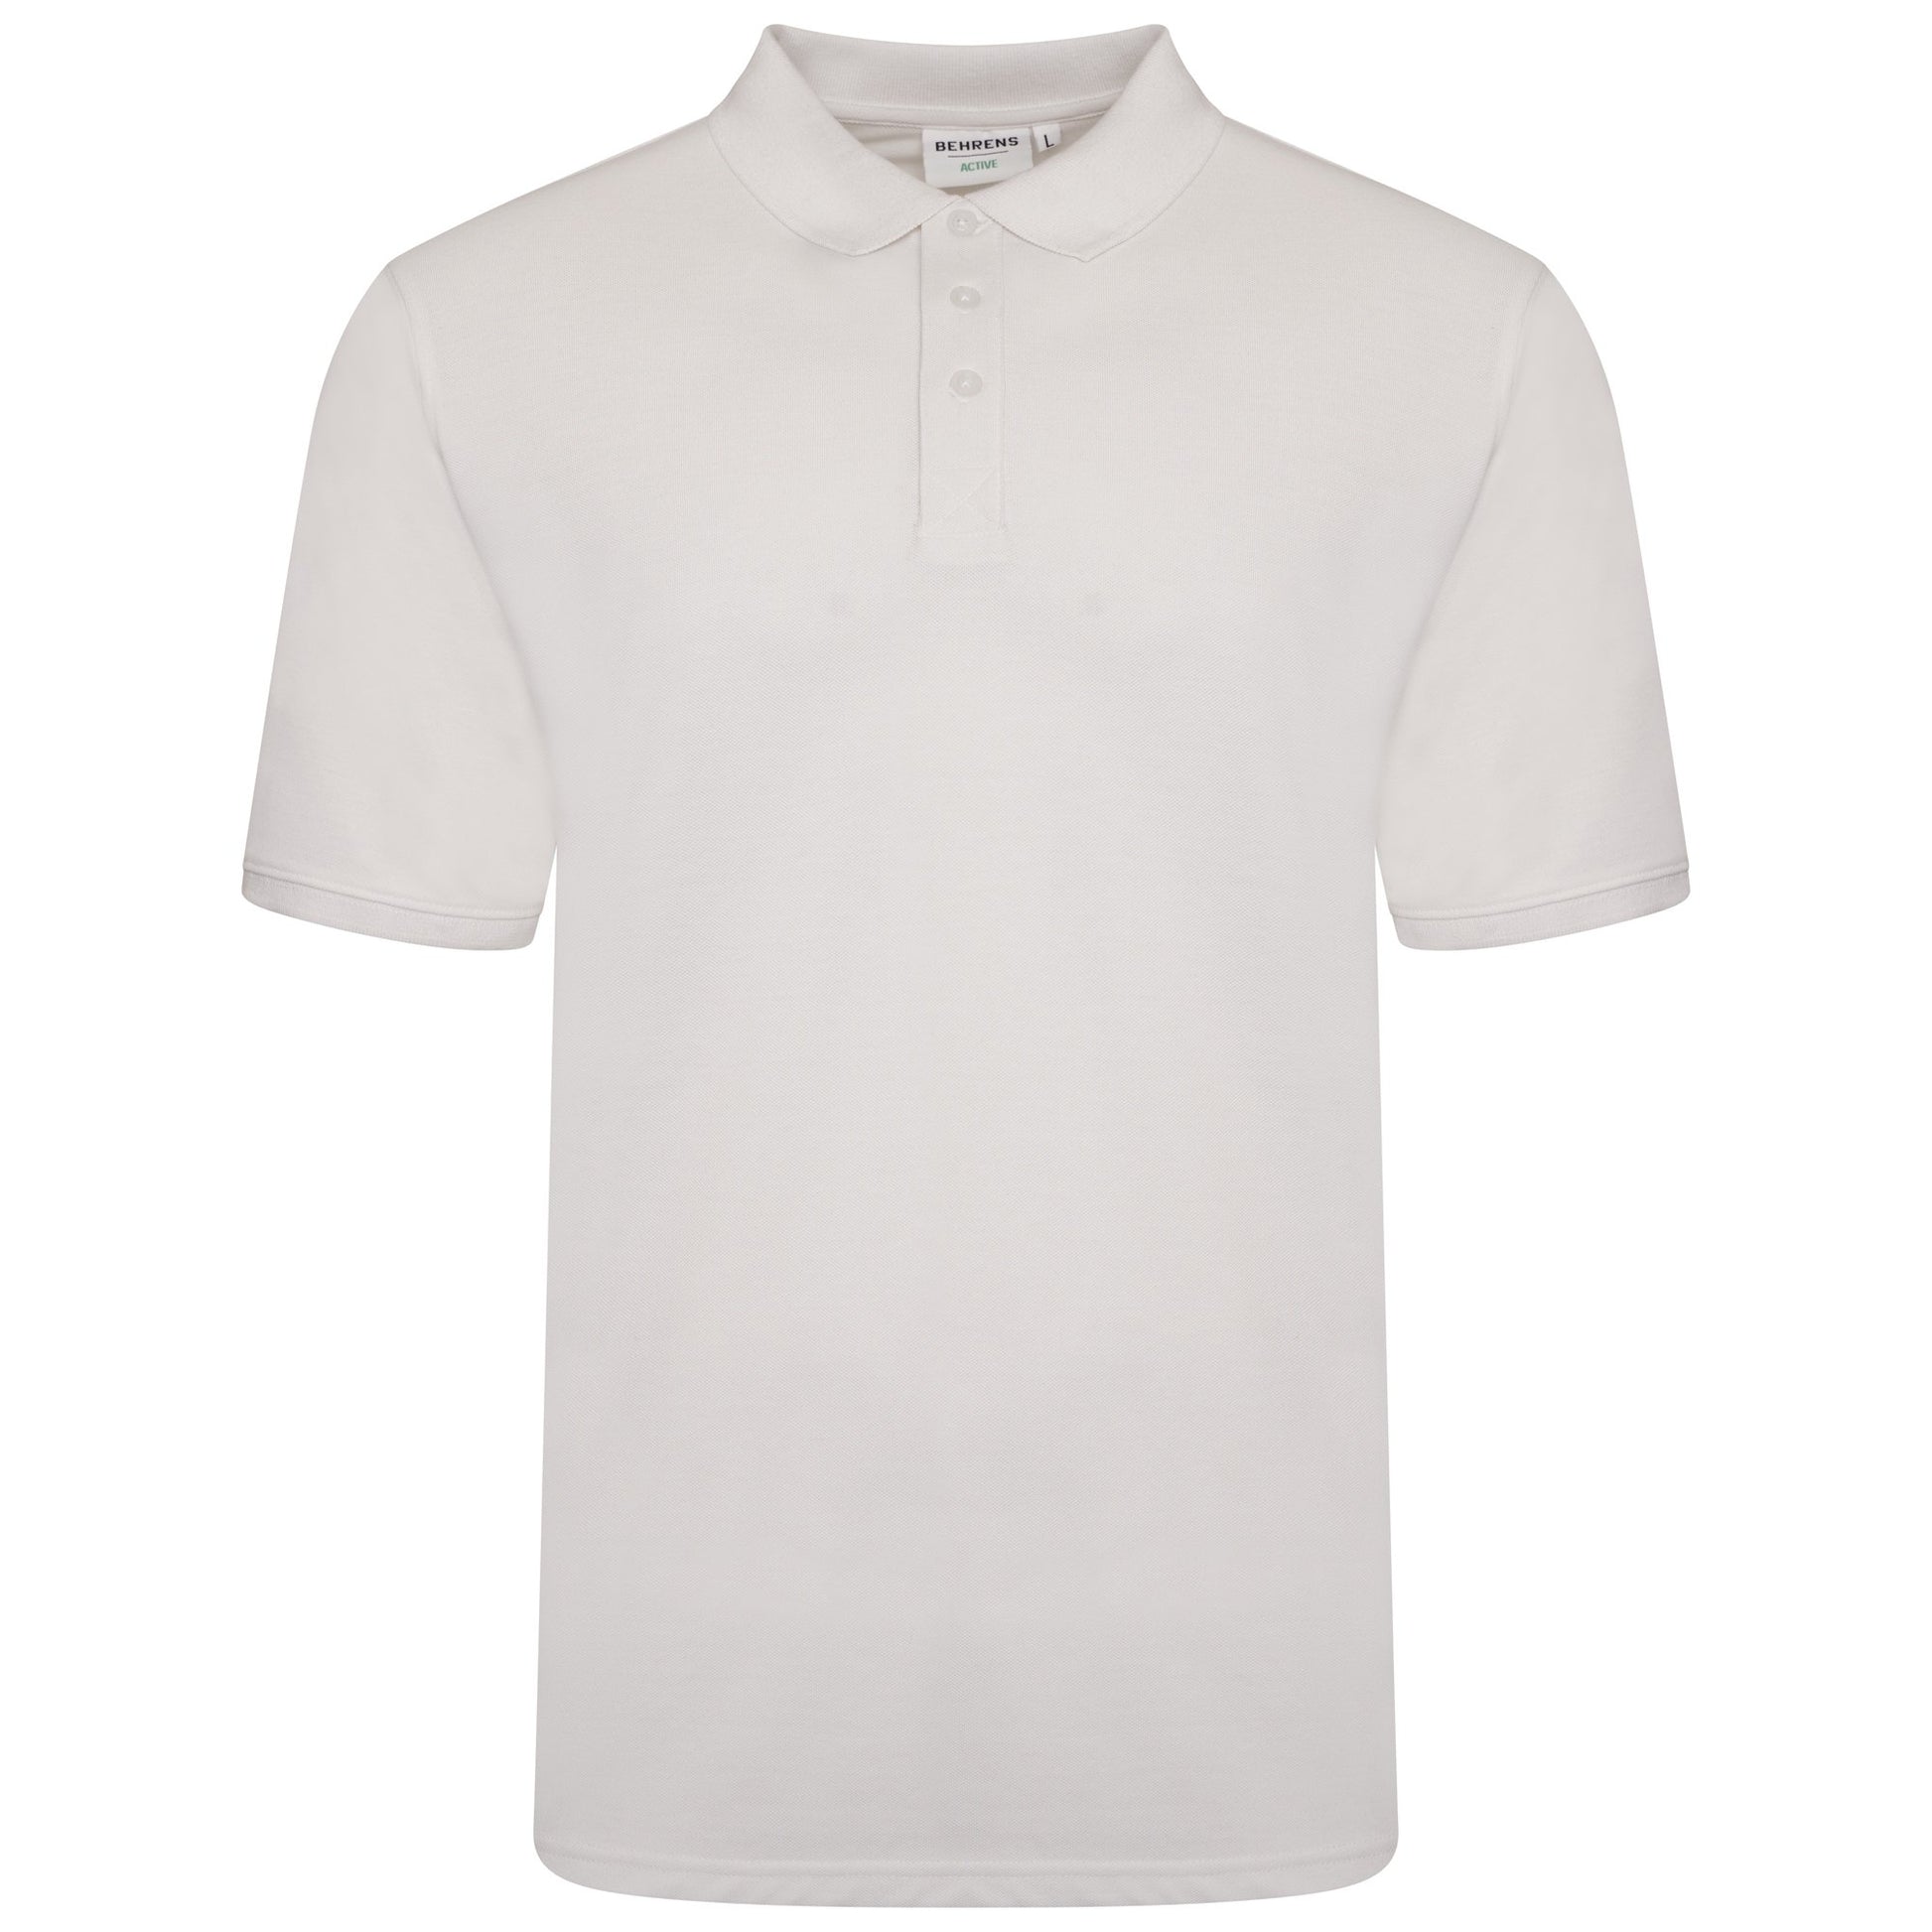 Behrens Mens Pique Polo Shirt - BEH-3522M - White - X Small